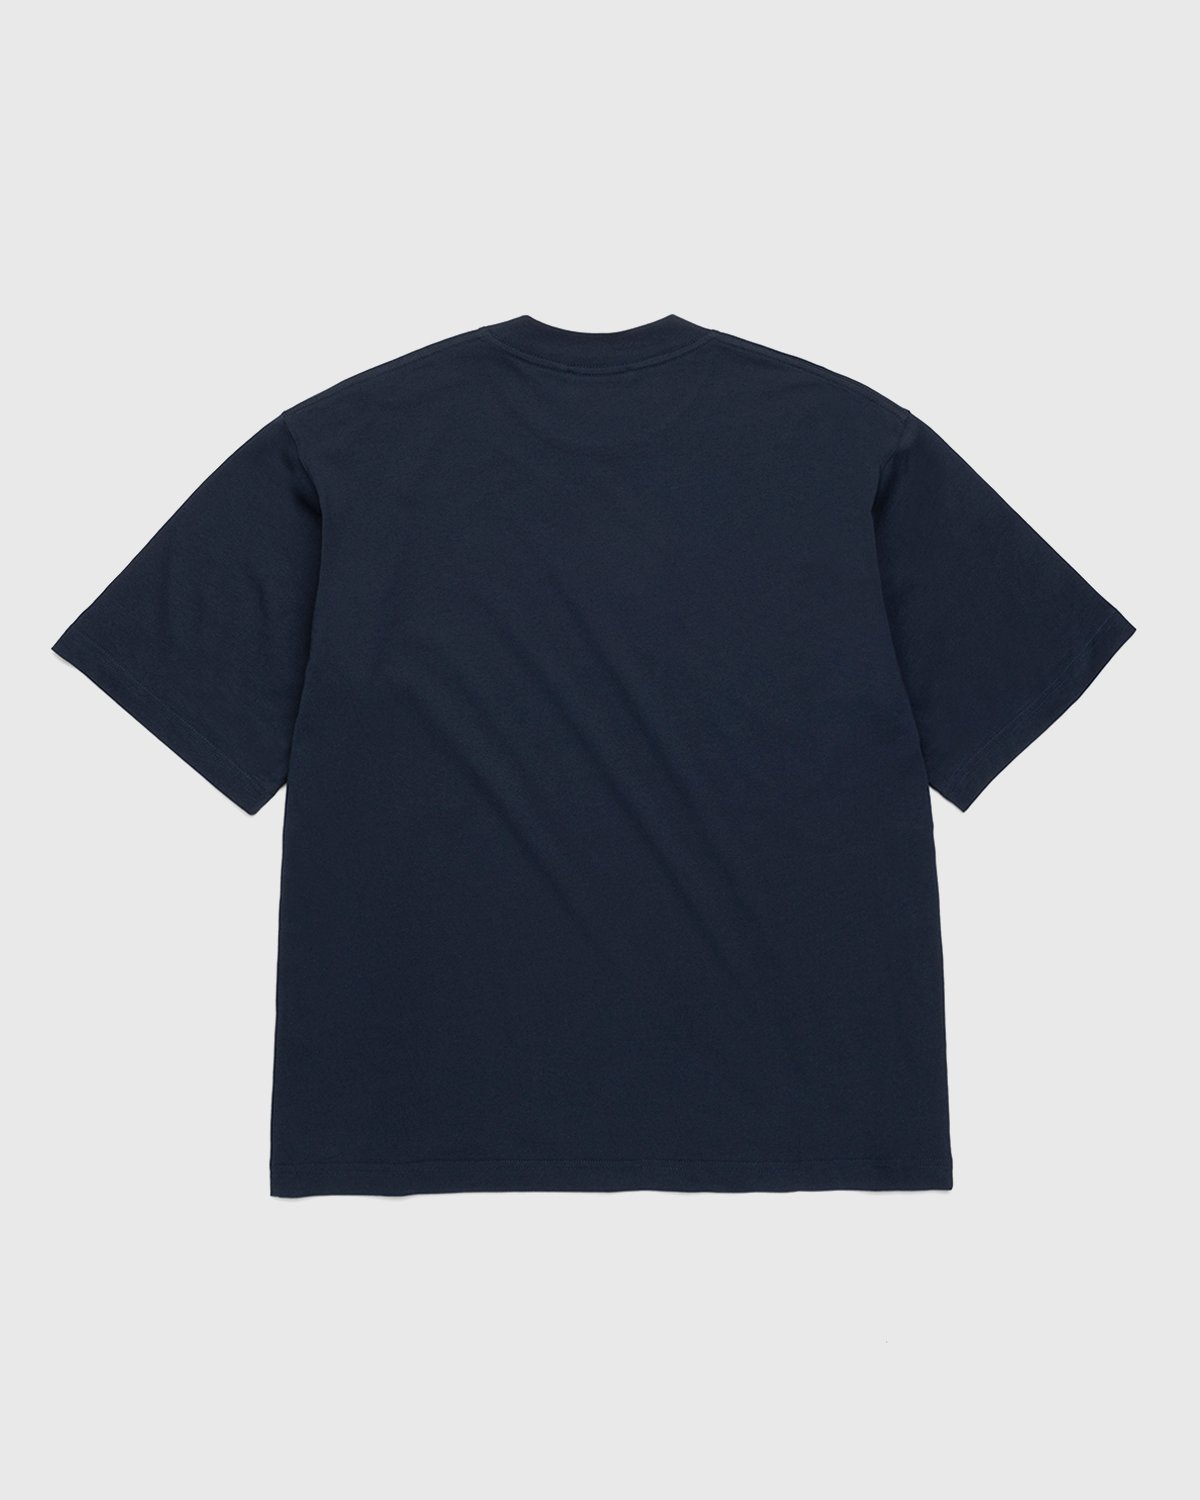 Marni - Logo T-Shirt Navy - Clothing - Blue - Image 2